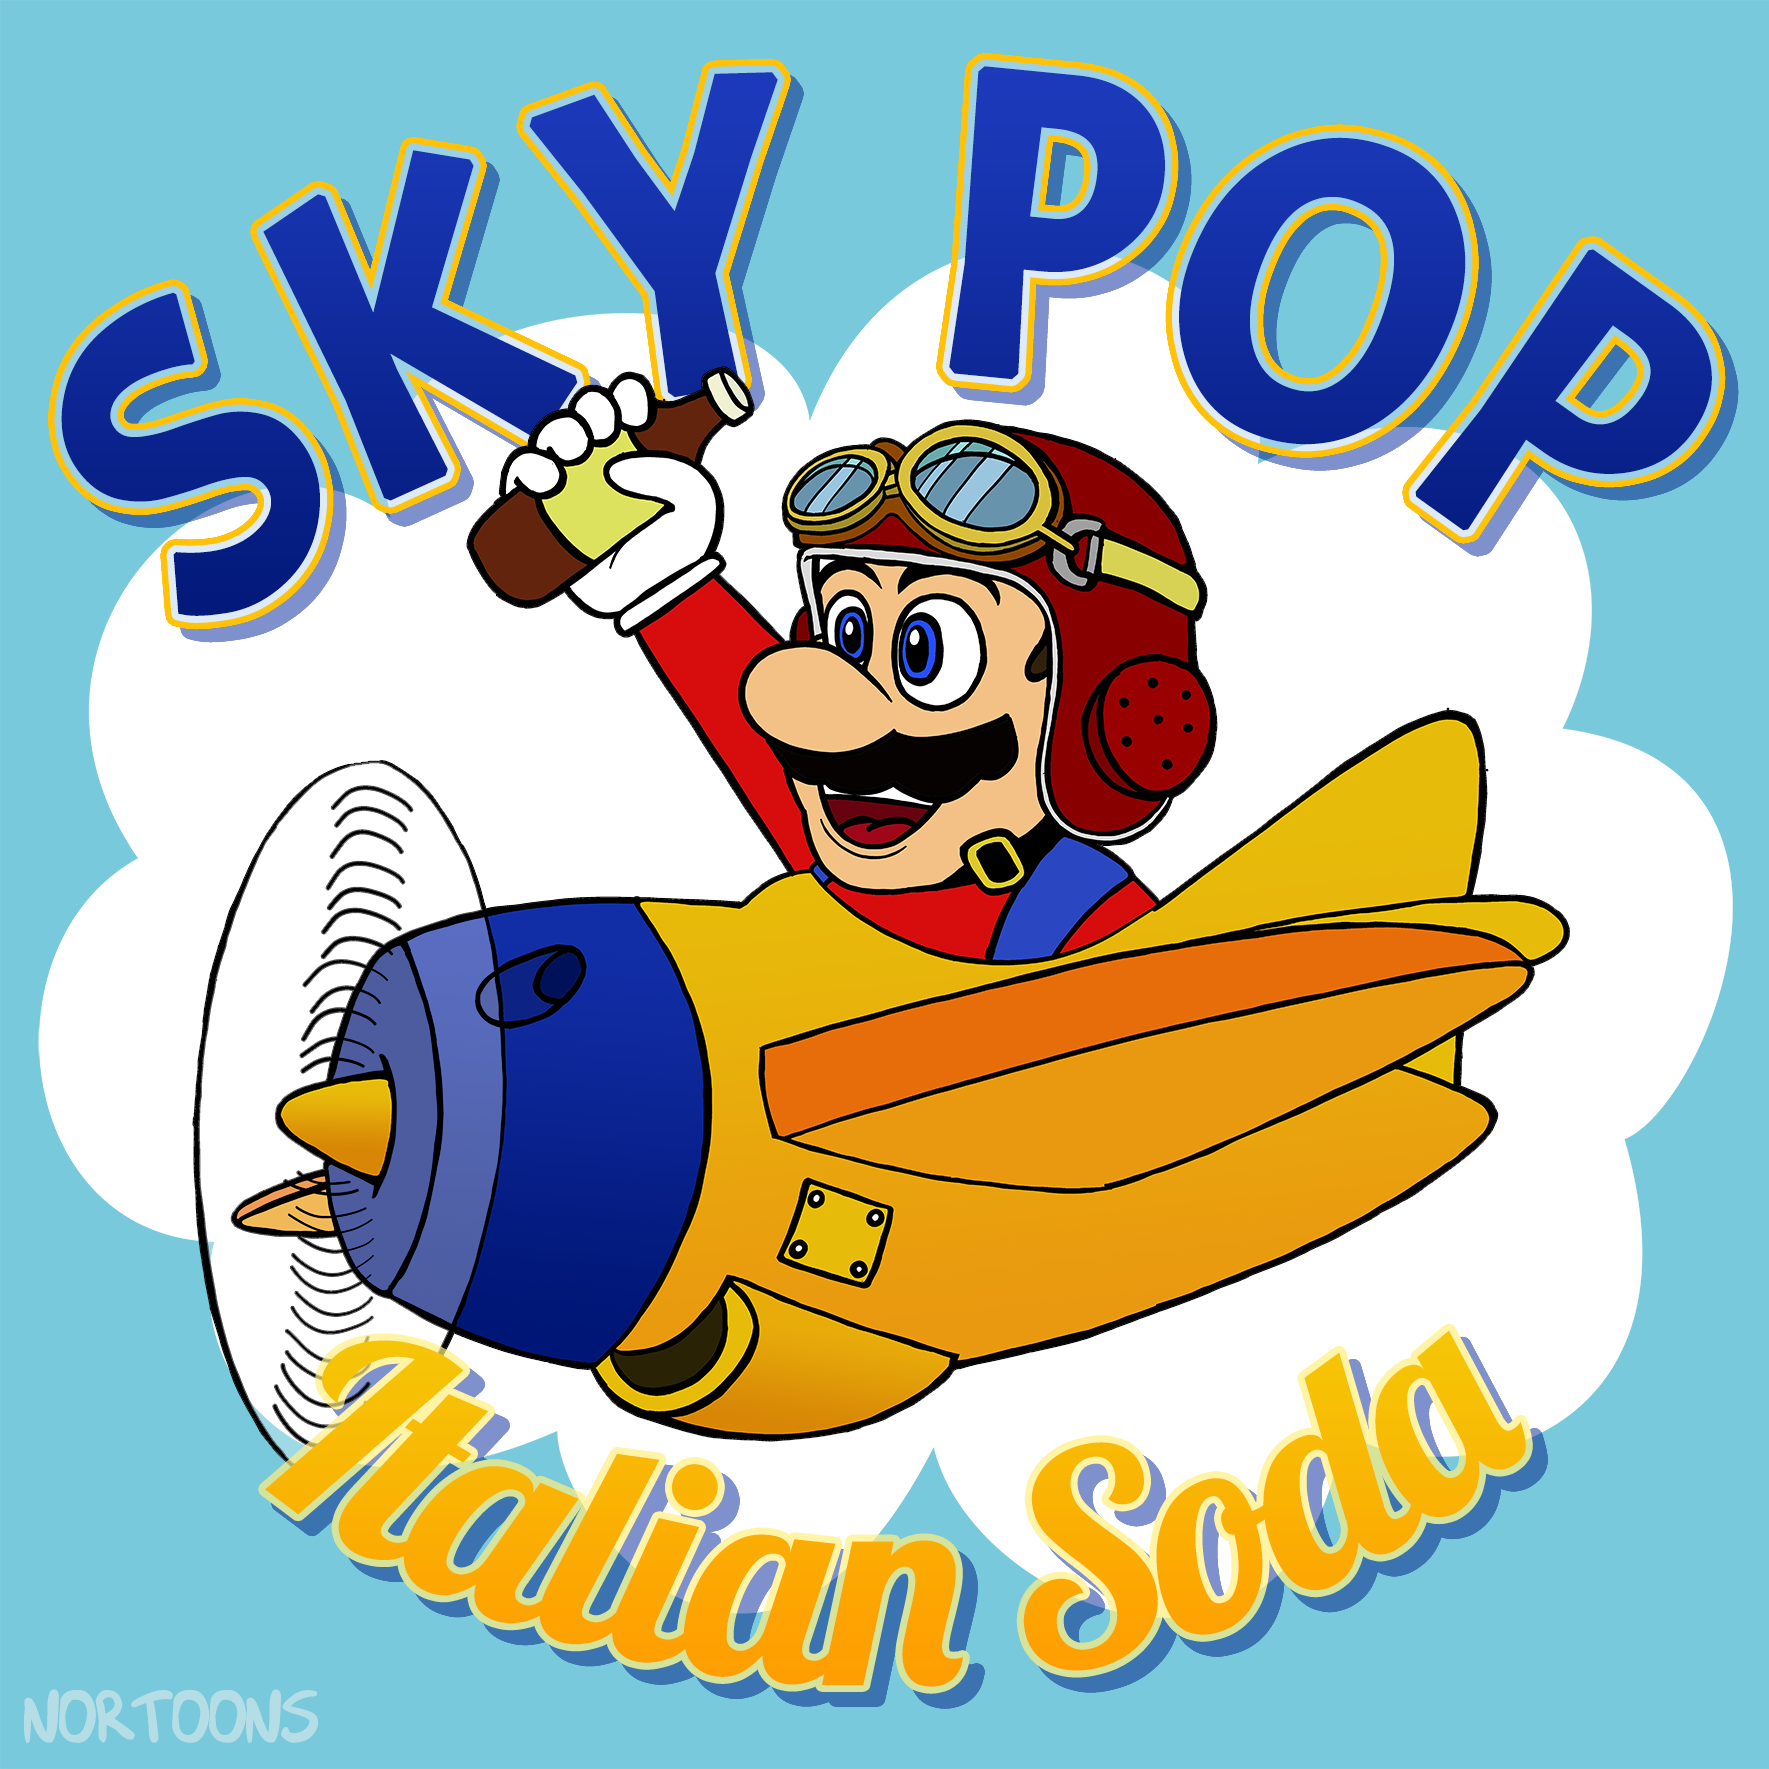 Sky Pop Italian Soda feat. Mario